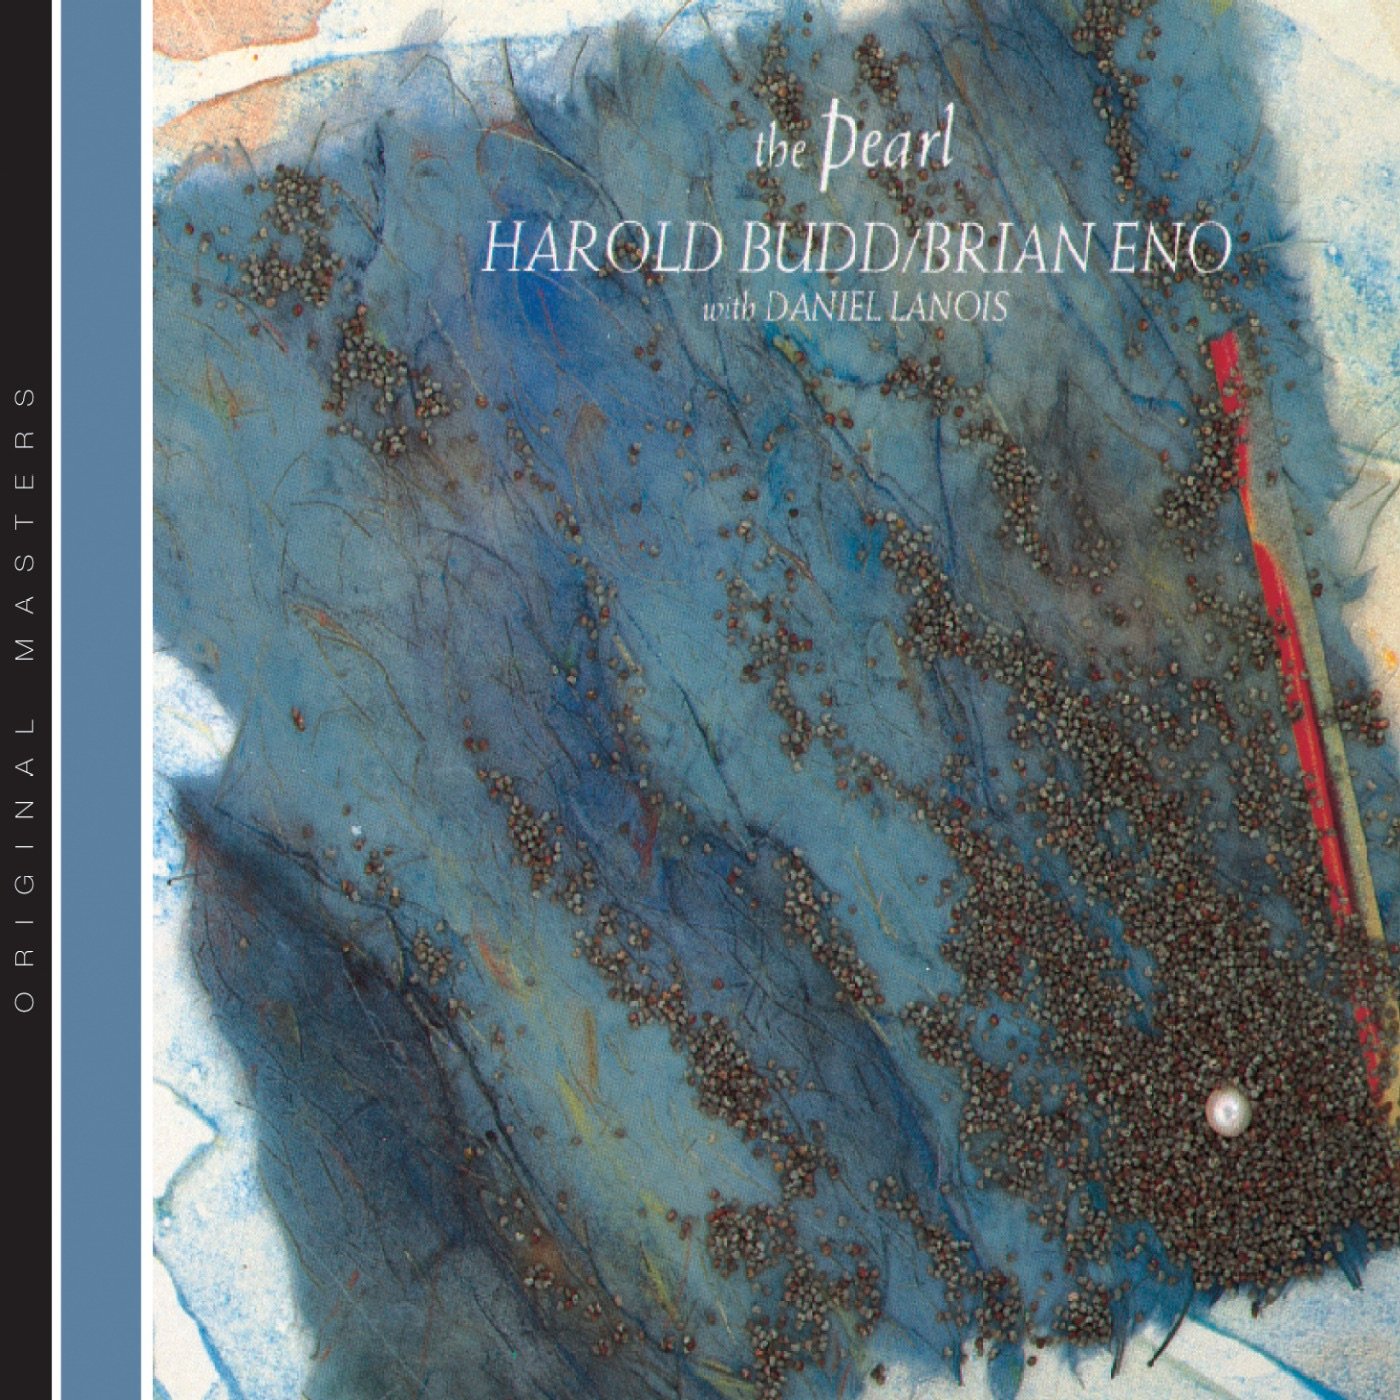 Brian Eno & Harold Budd - A Stream With Bright Fish